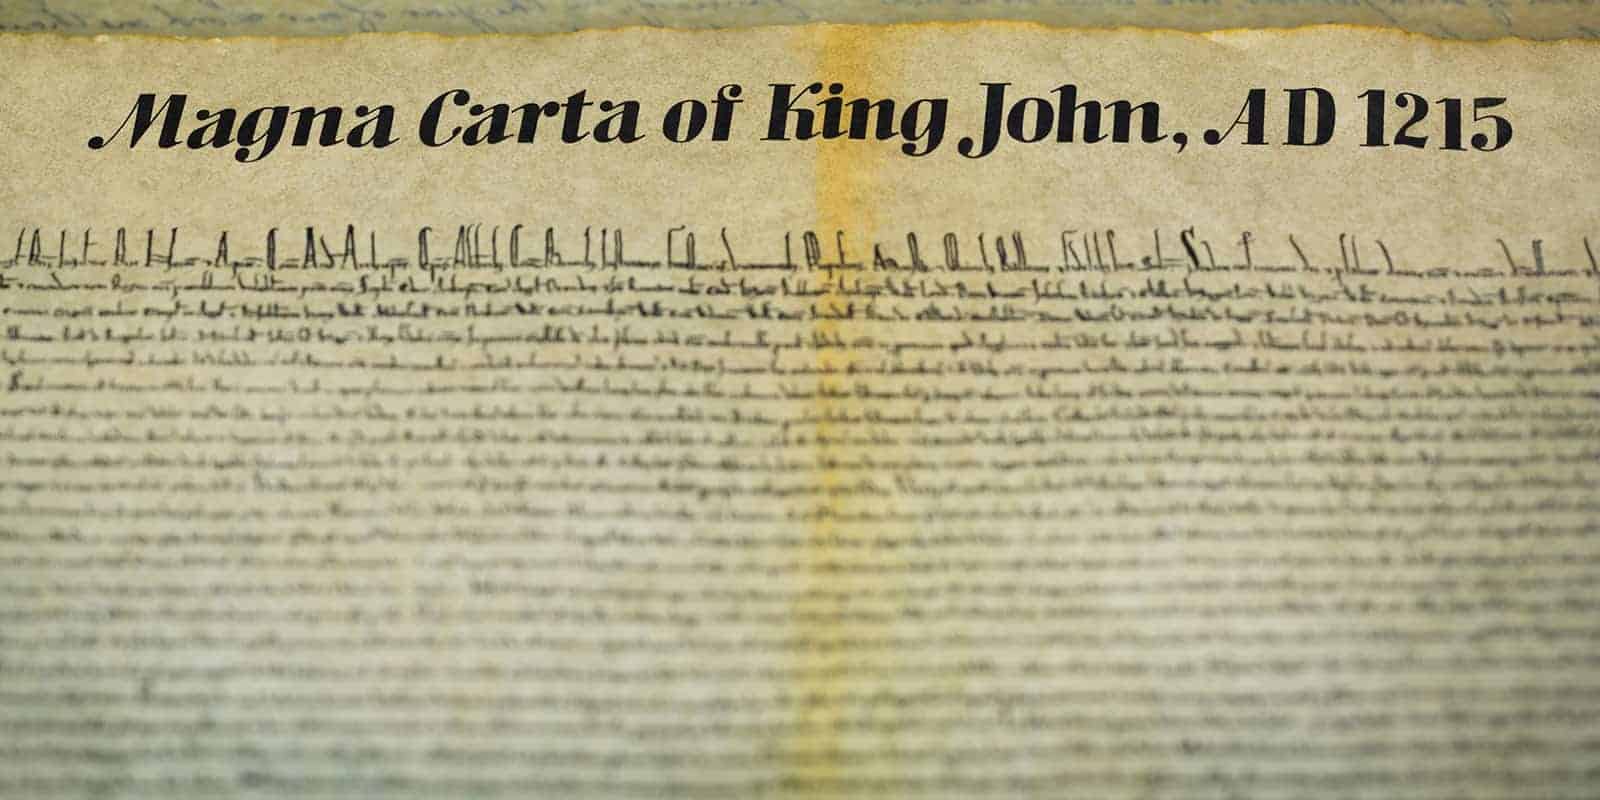 A close up of the Magna Carta of King John.